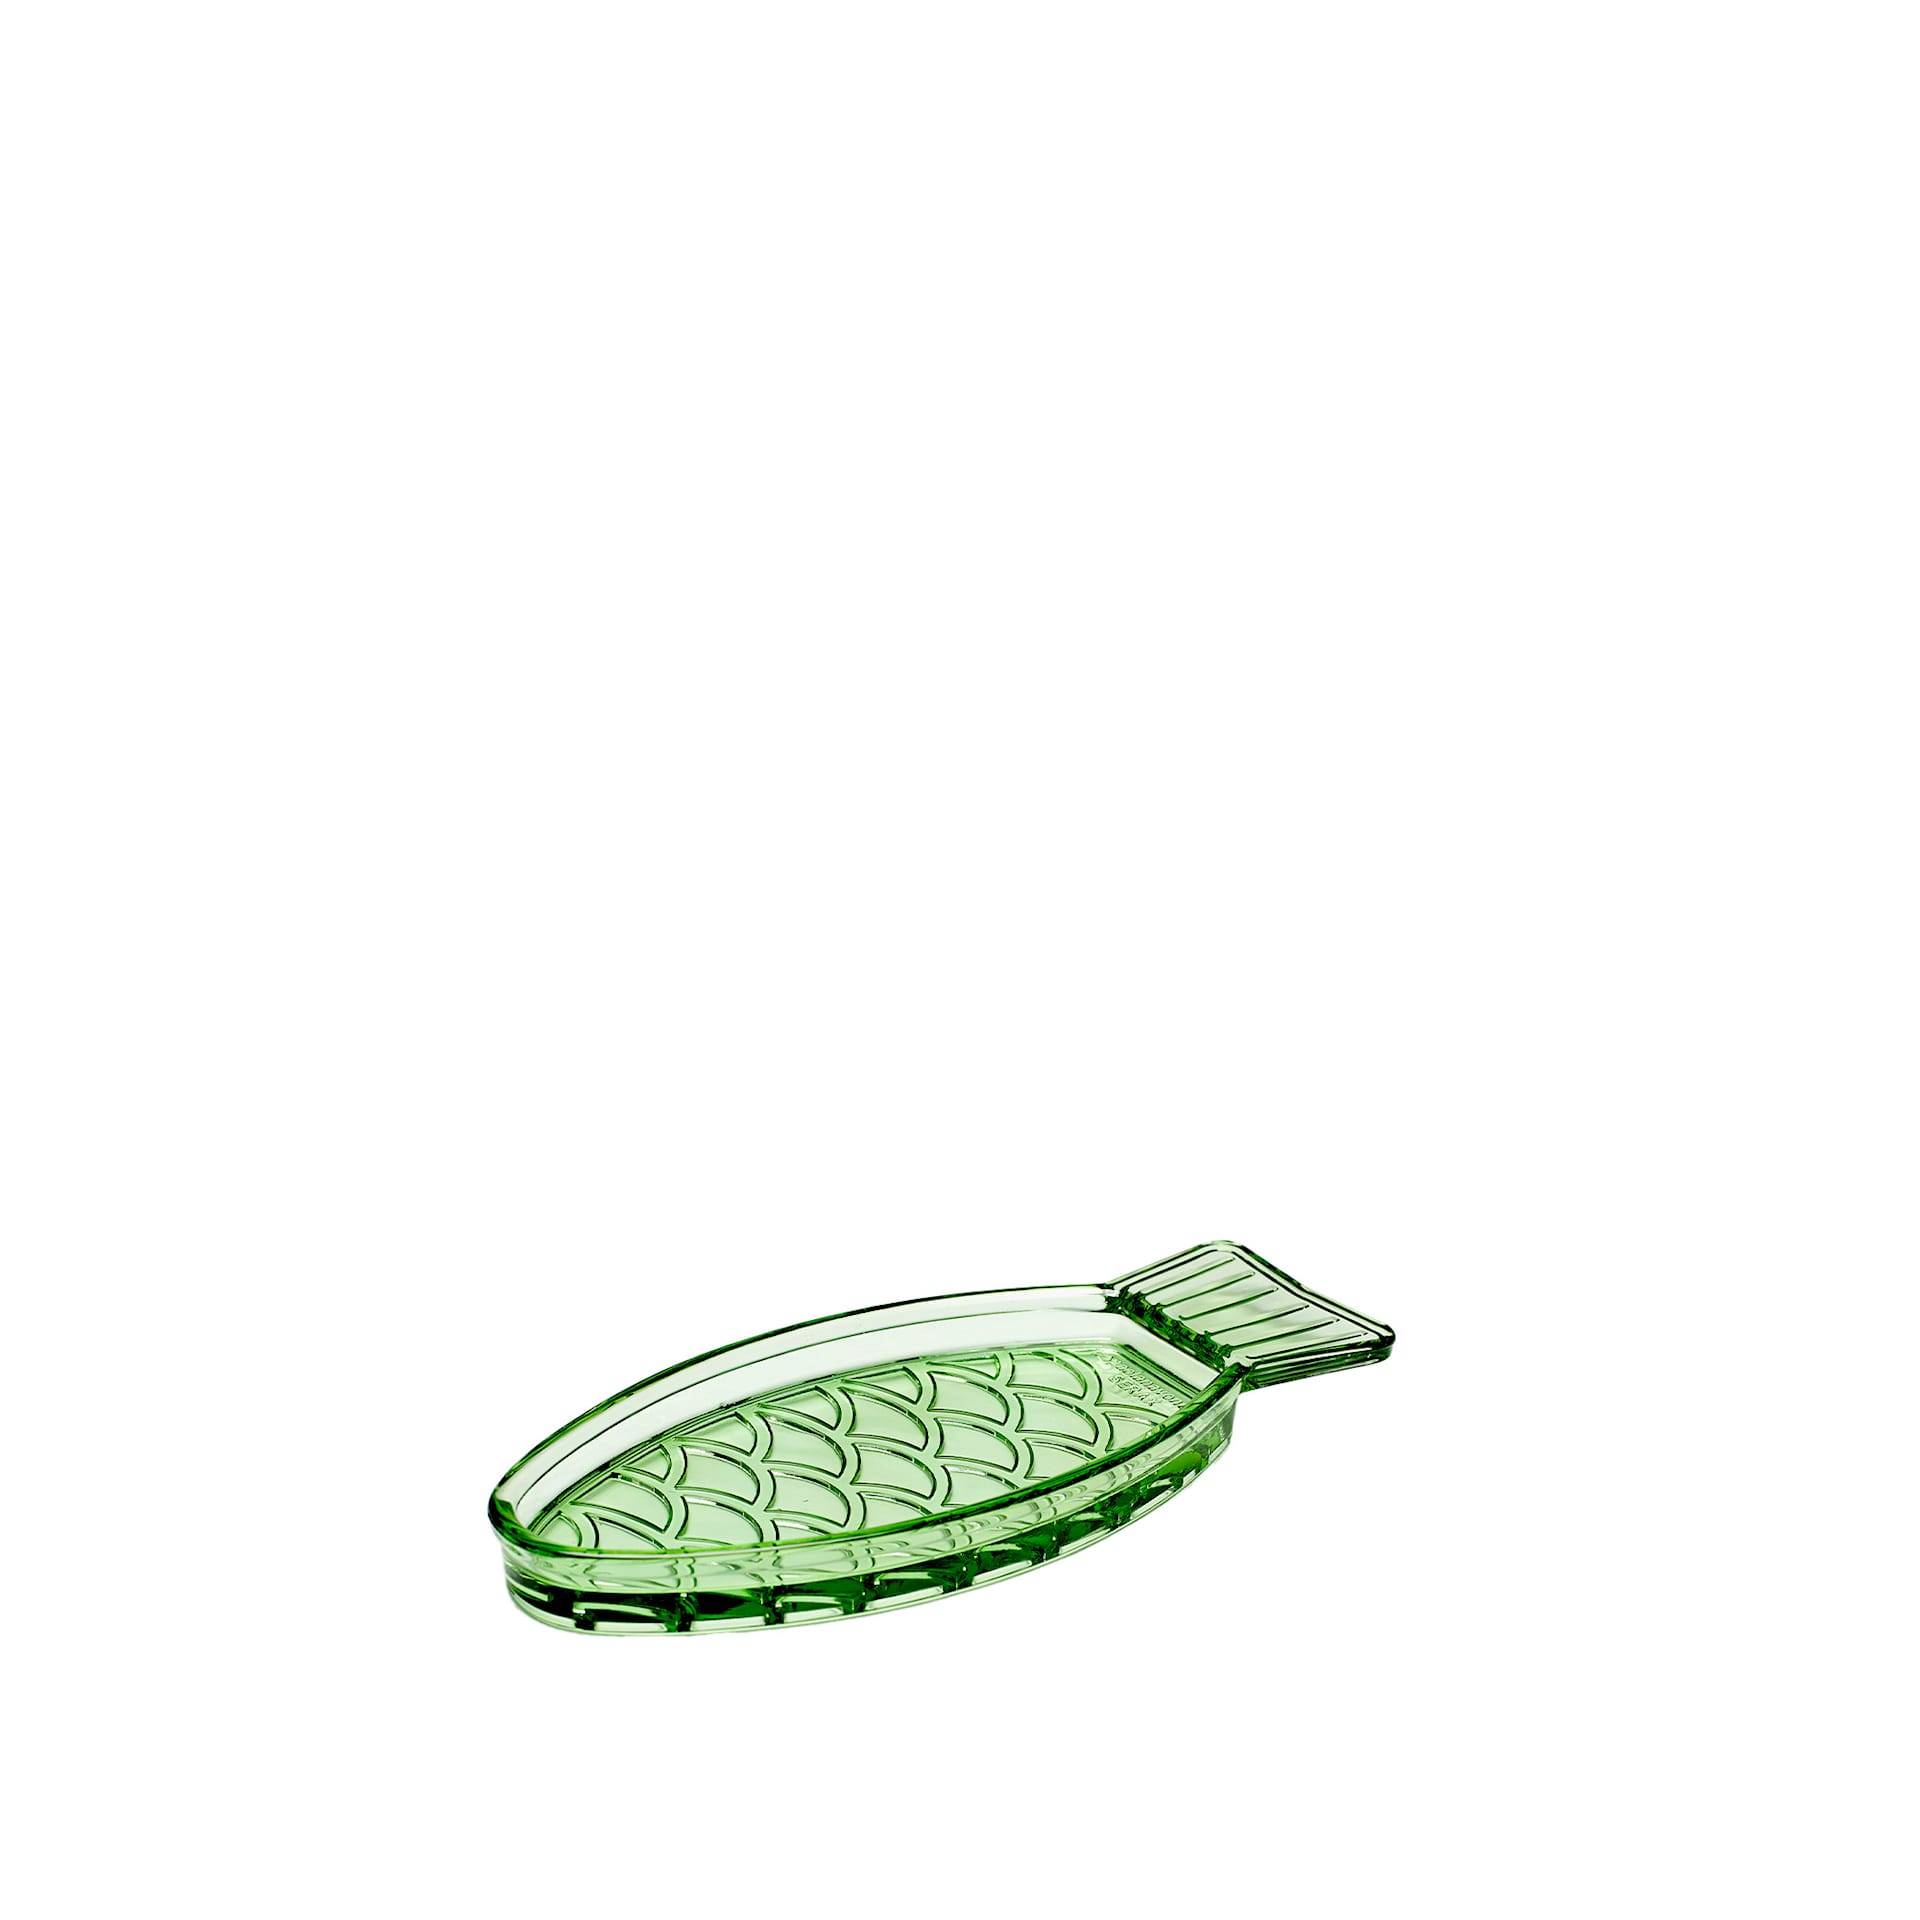 Fish Dish Small Transparent Green - Serax - NO GA